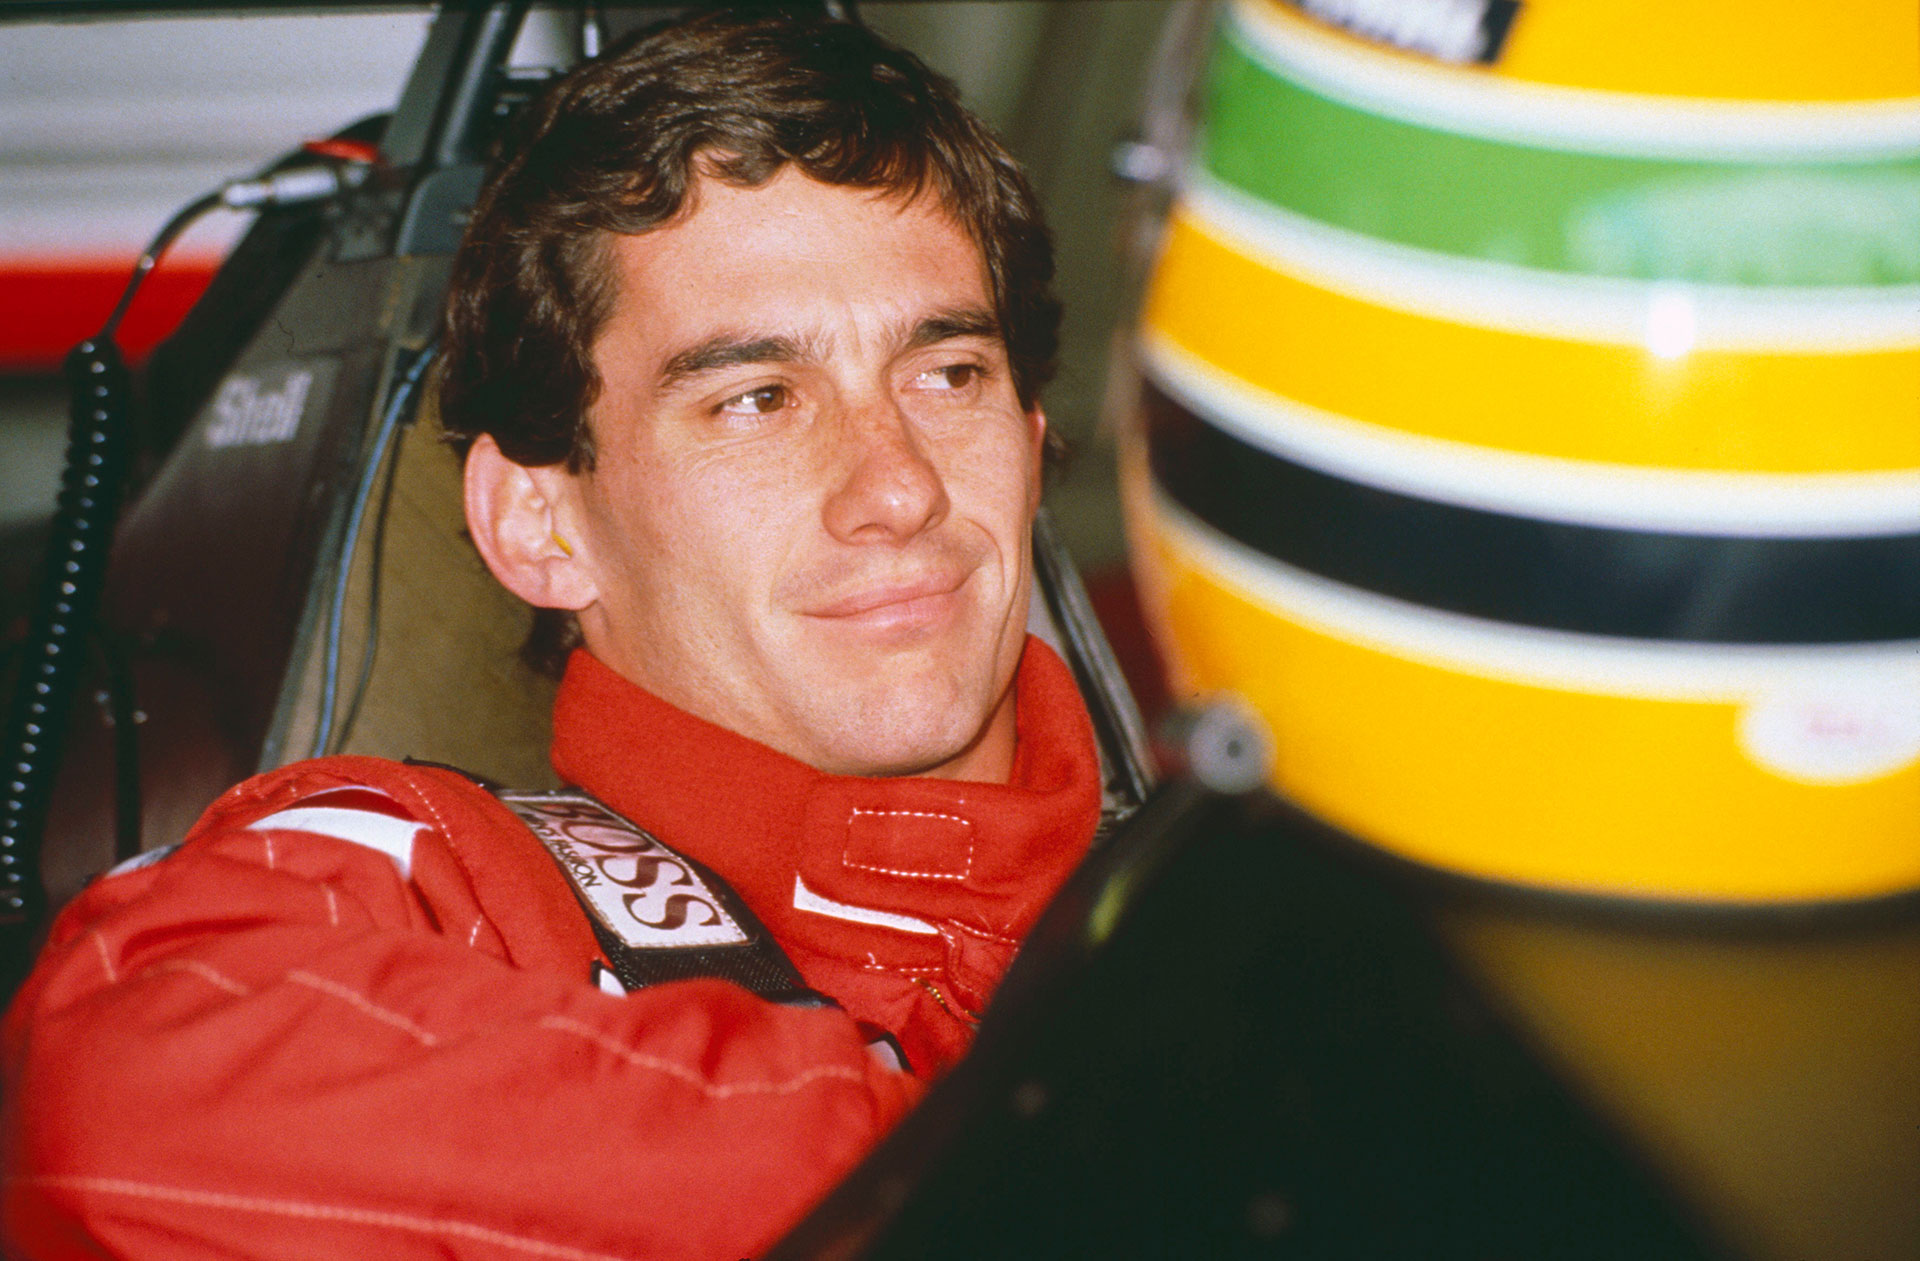 El piloto brasileño falleció el 1 de mayo de 1994 a la edad de 34 años. (Shutterstock)